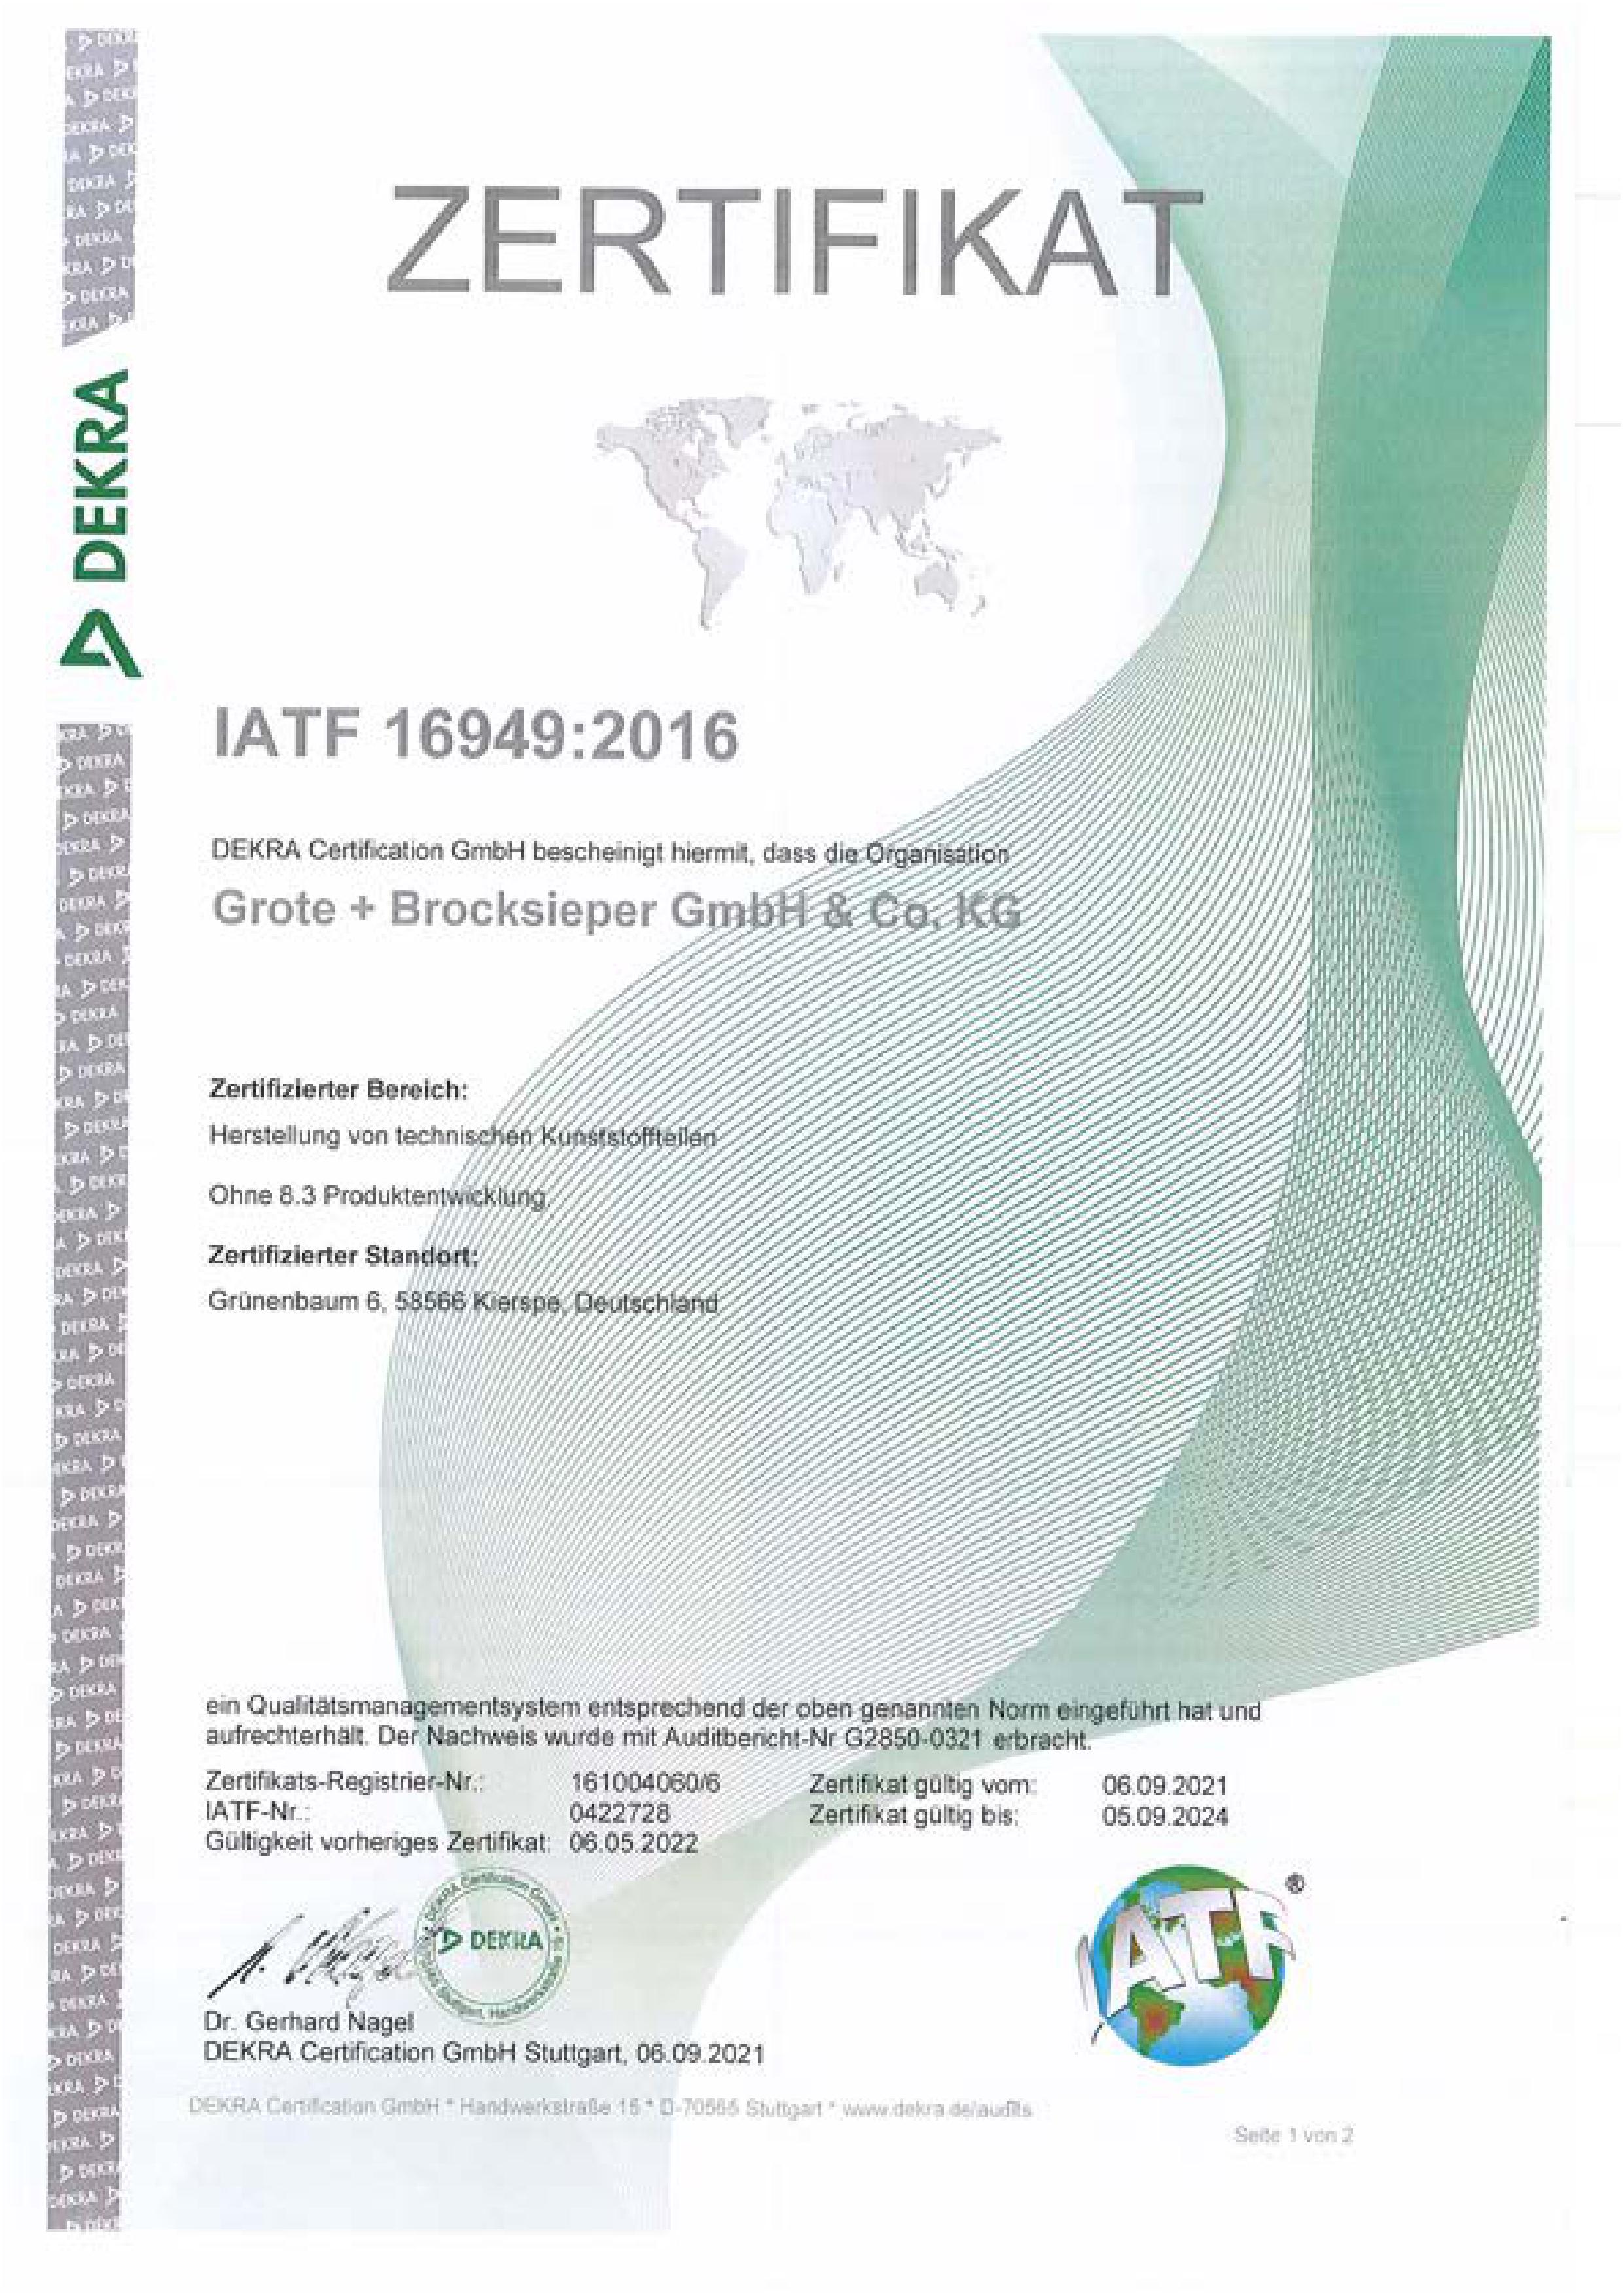 Zertifikat IATF - Anklicken zum Downloaden